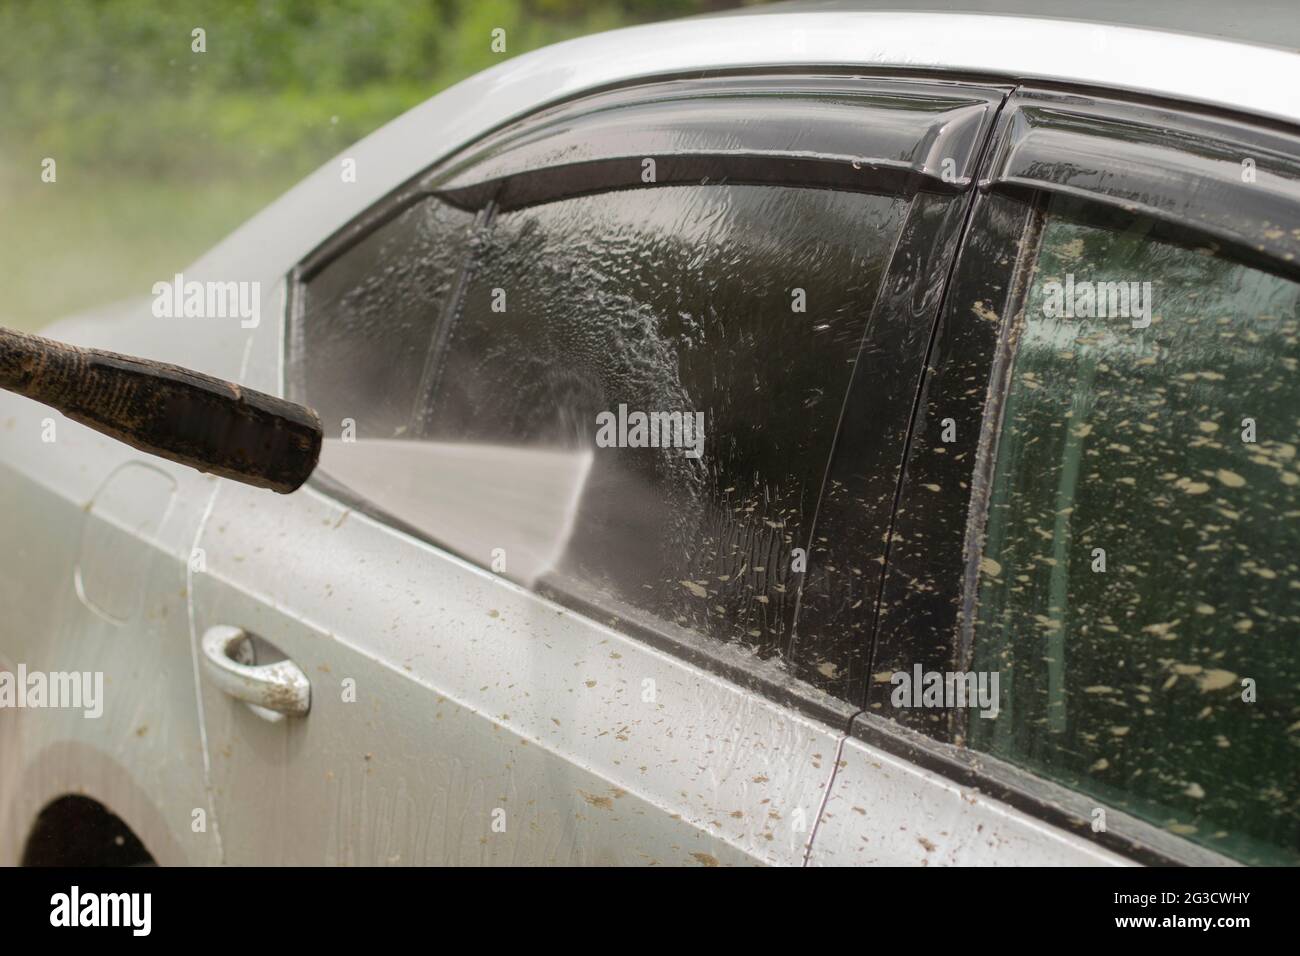 Autowäsche. Das Auto wird unter dem Druck eines Wasserstrahls gewaschen. Mit einem Wasserspray Schmutz von der Fahrzeugoberfläche abwaschen. Stockfoto